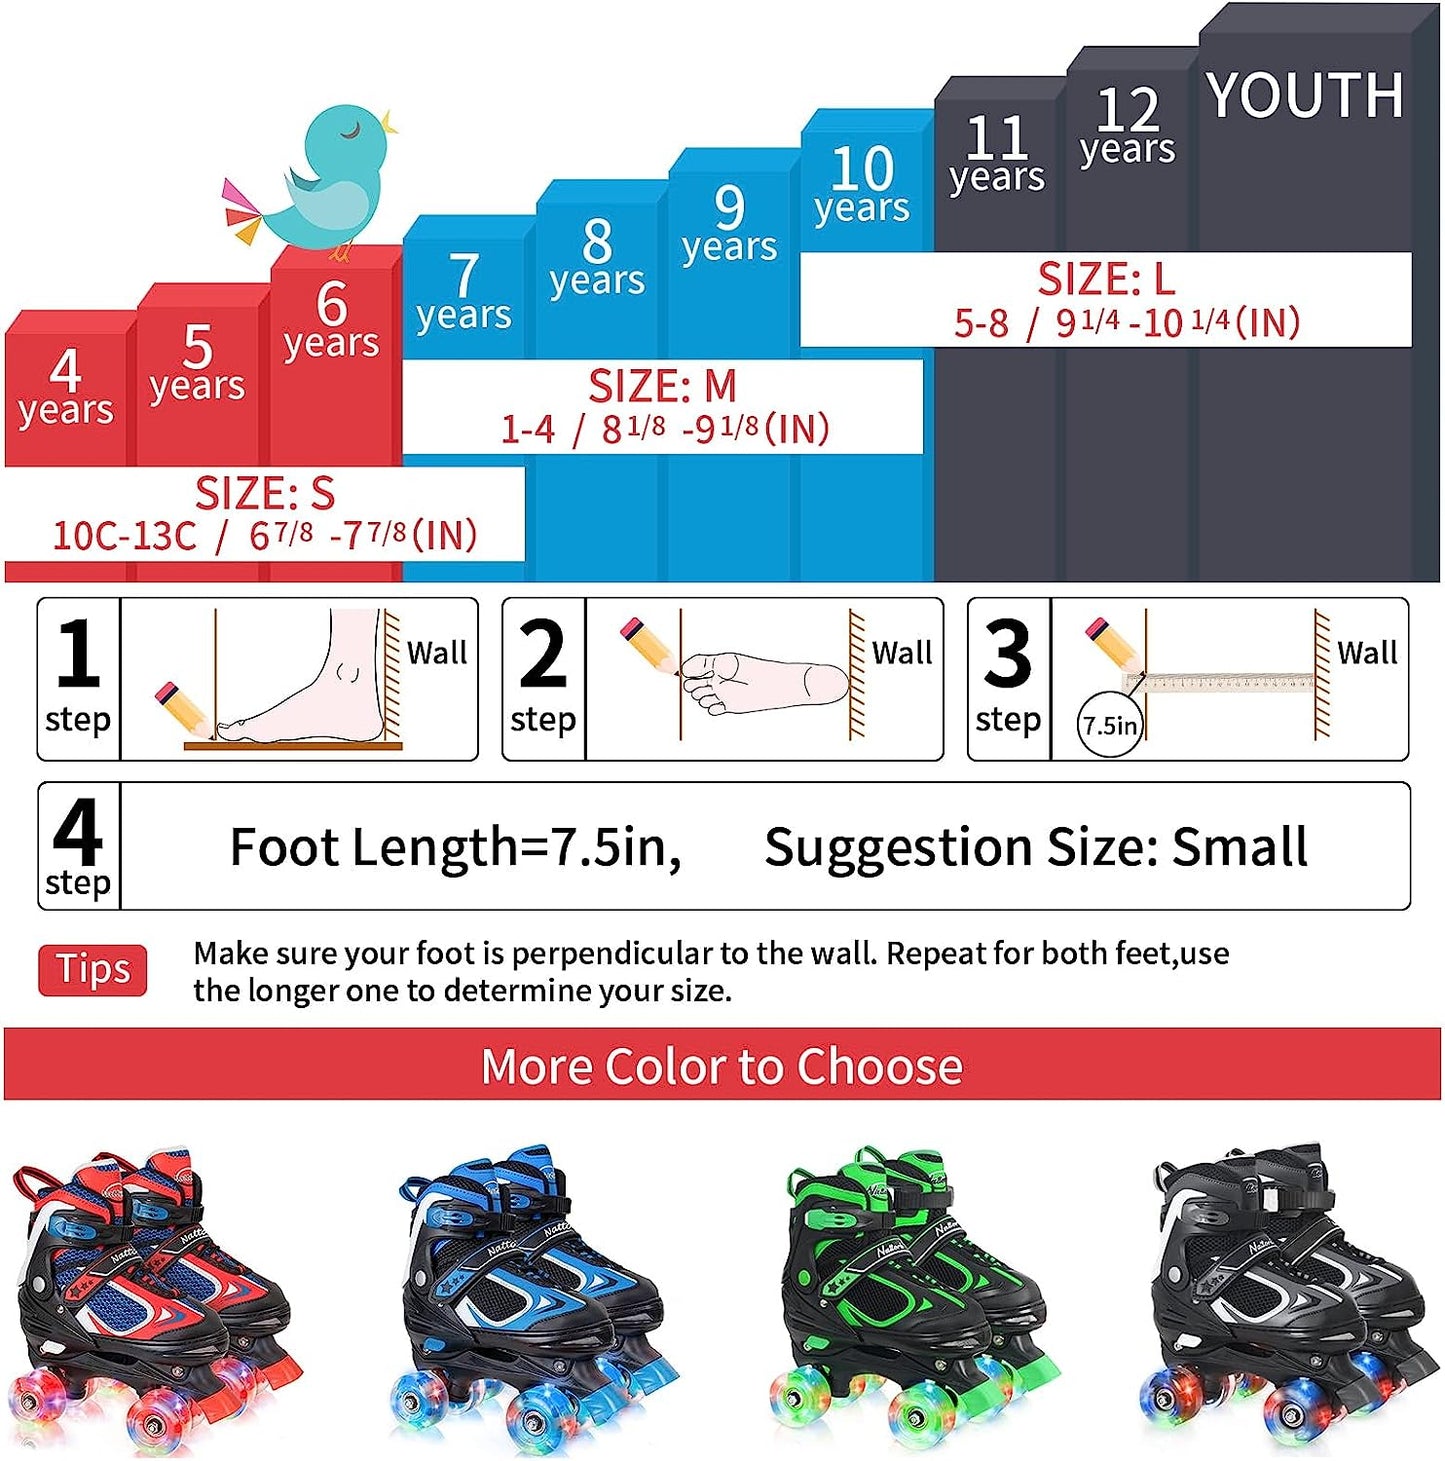 Nattork Adjustable Roller Skates for Kids-Red